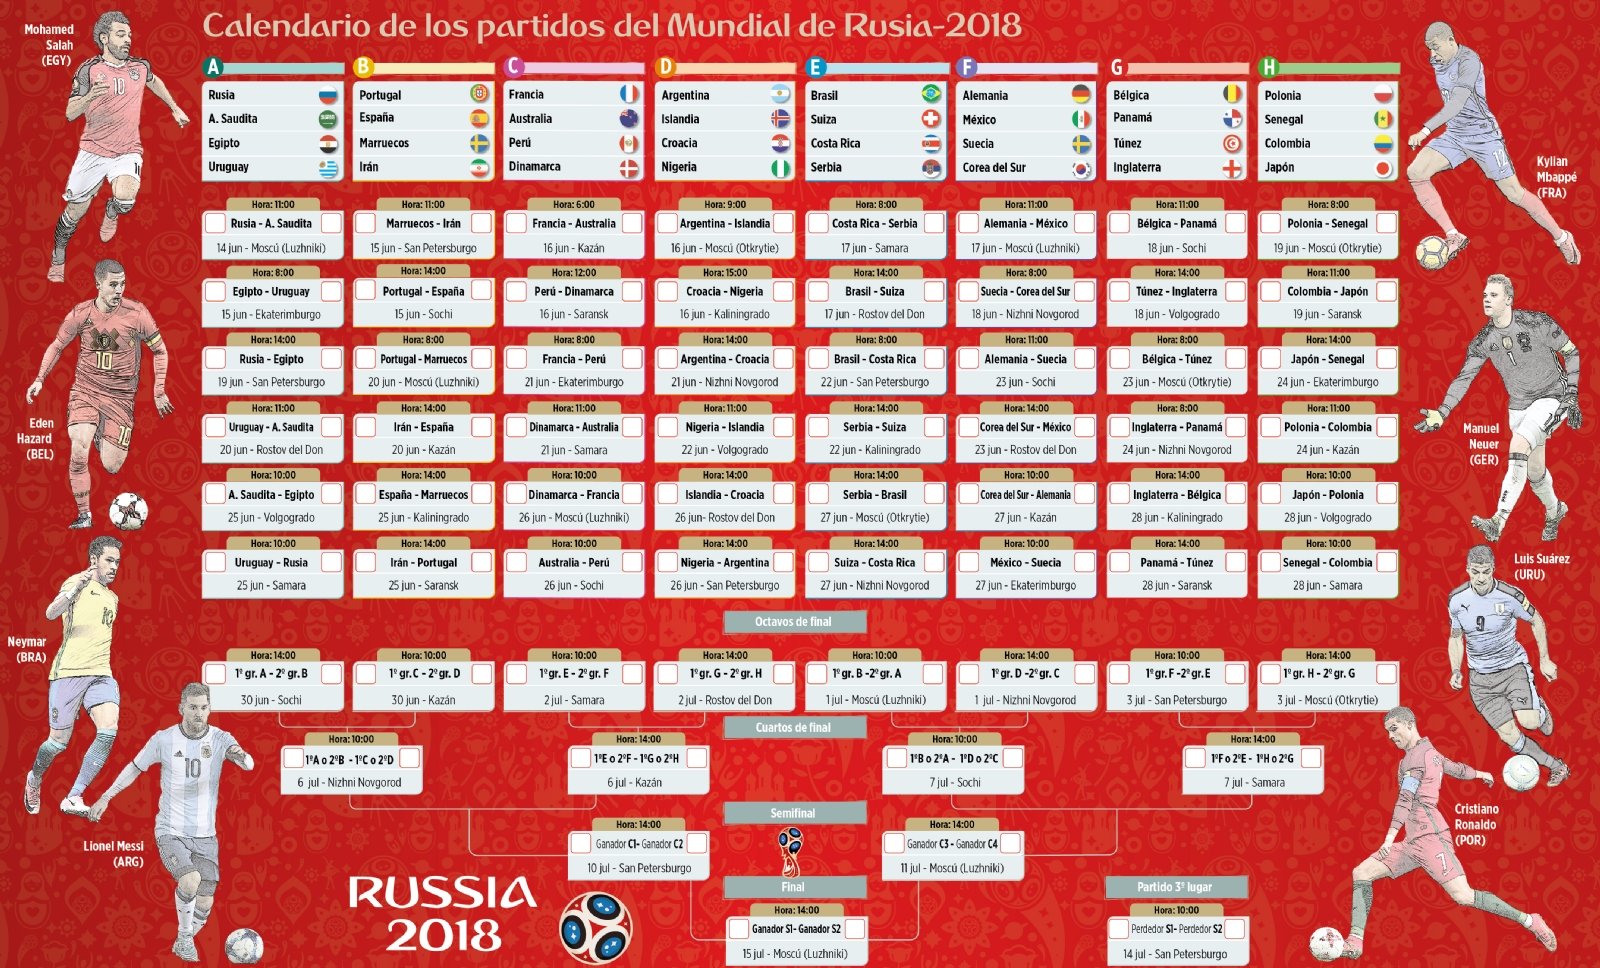 Mariscos en general Familiar 20 calendarios del Mundial de Fútbol 2018 para descargar e imprimir